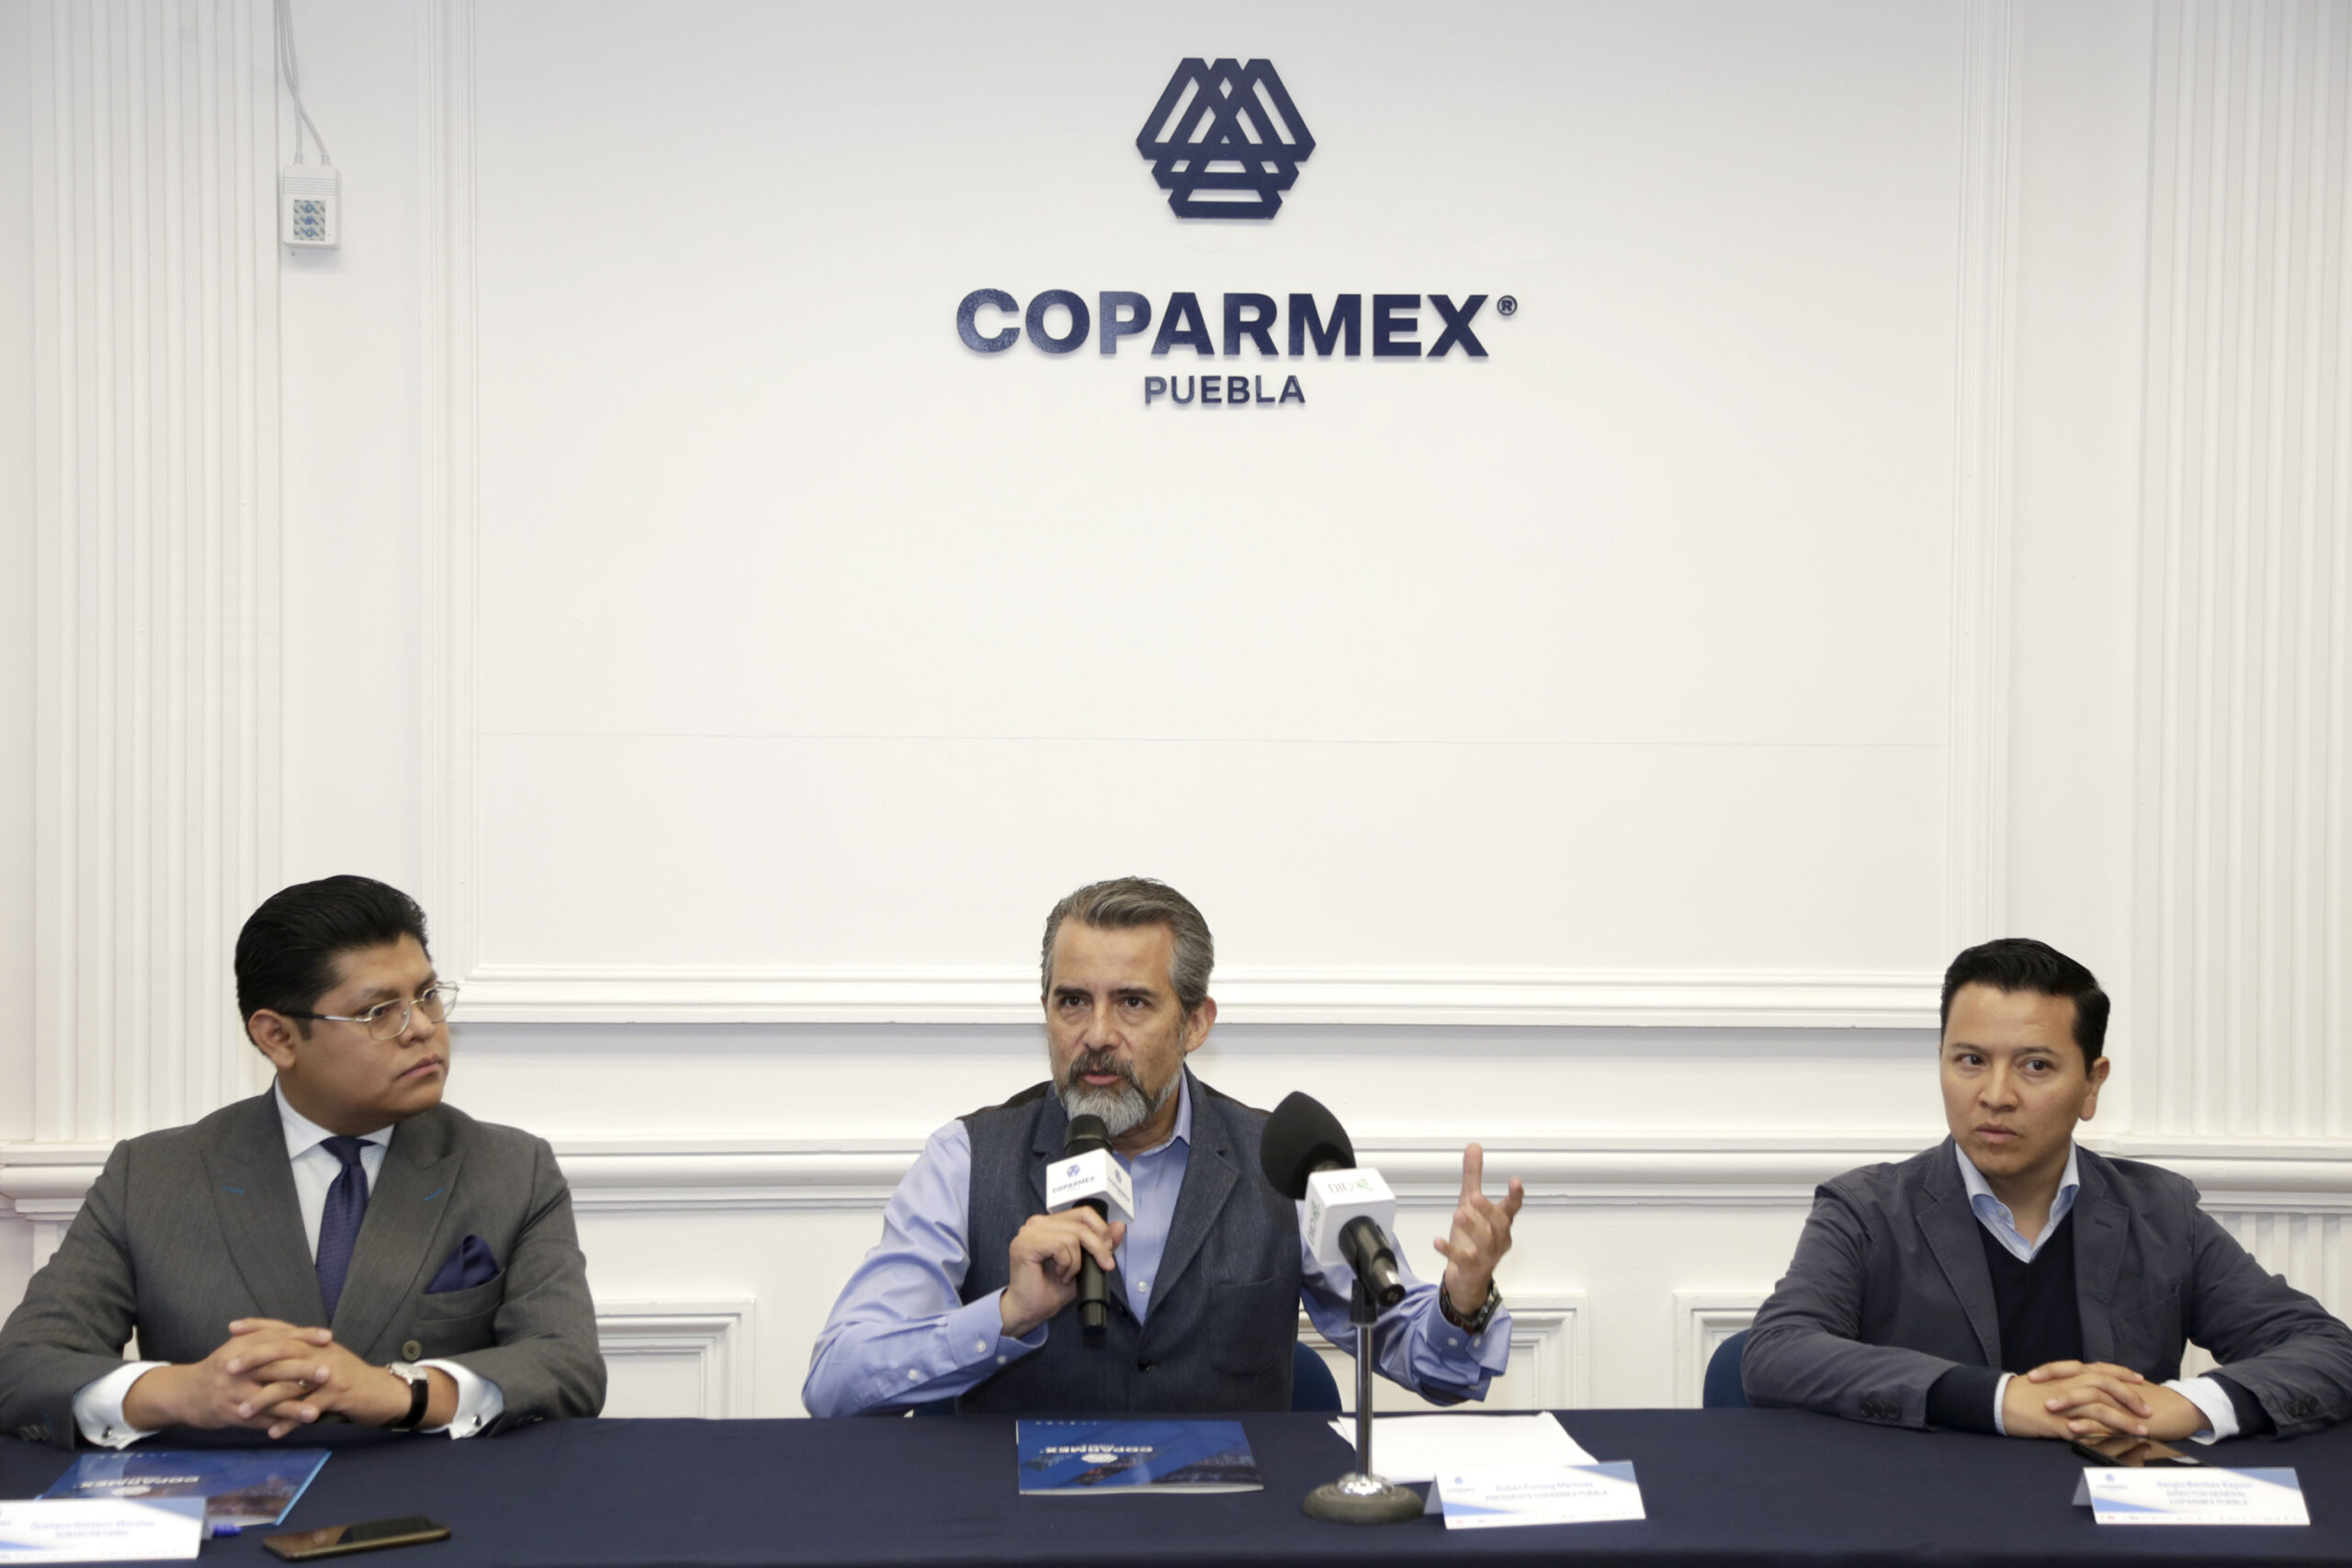 Intentan hackear cuenta de WhatsApp a Coparmex Puebla para robar información  